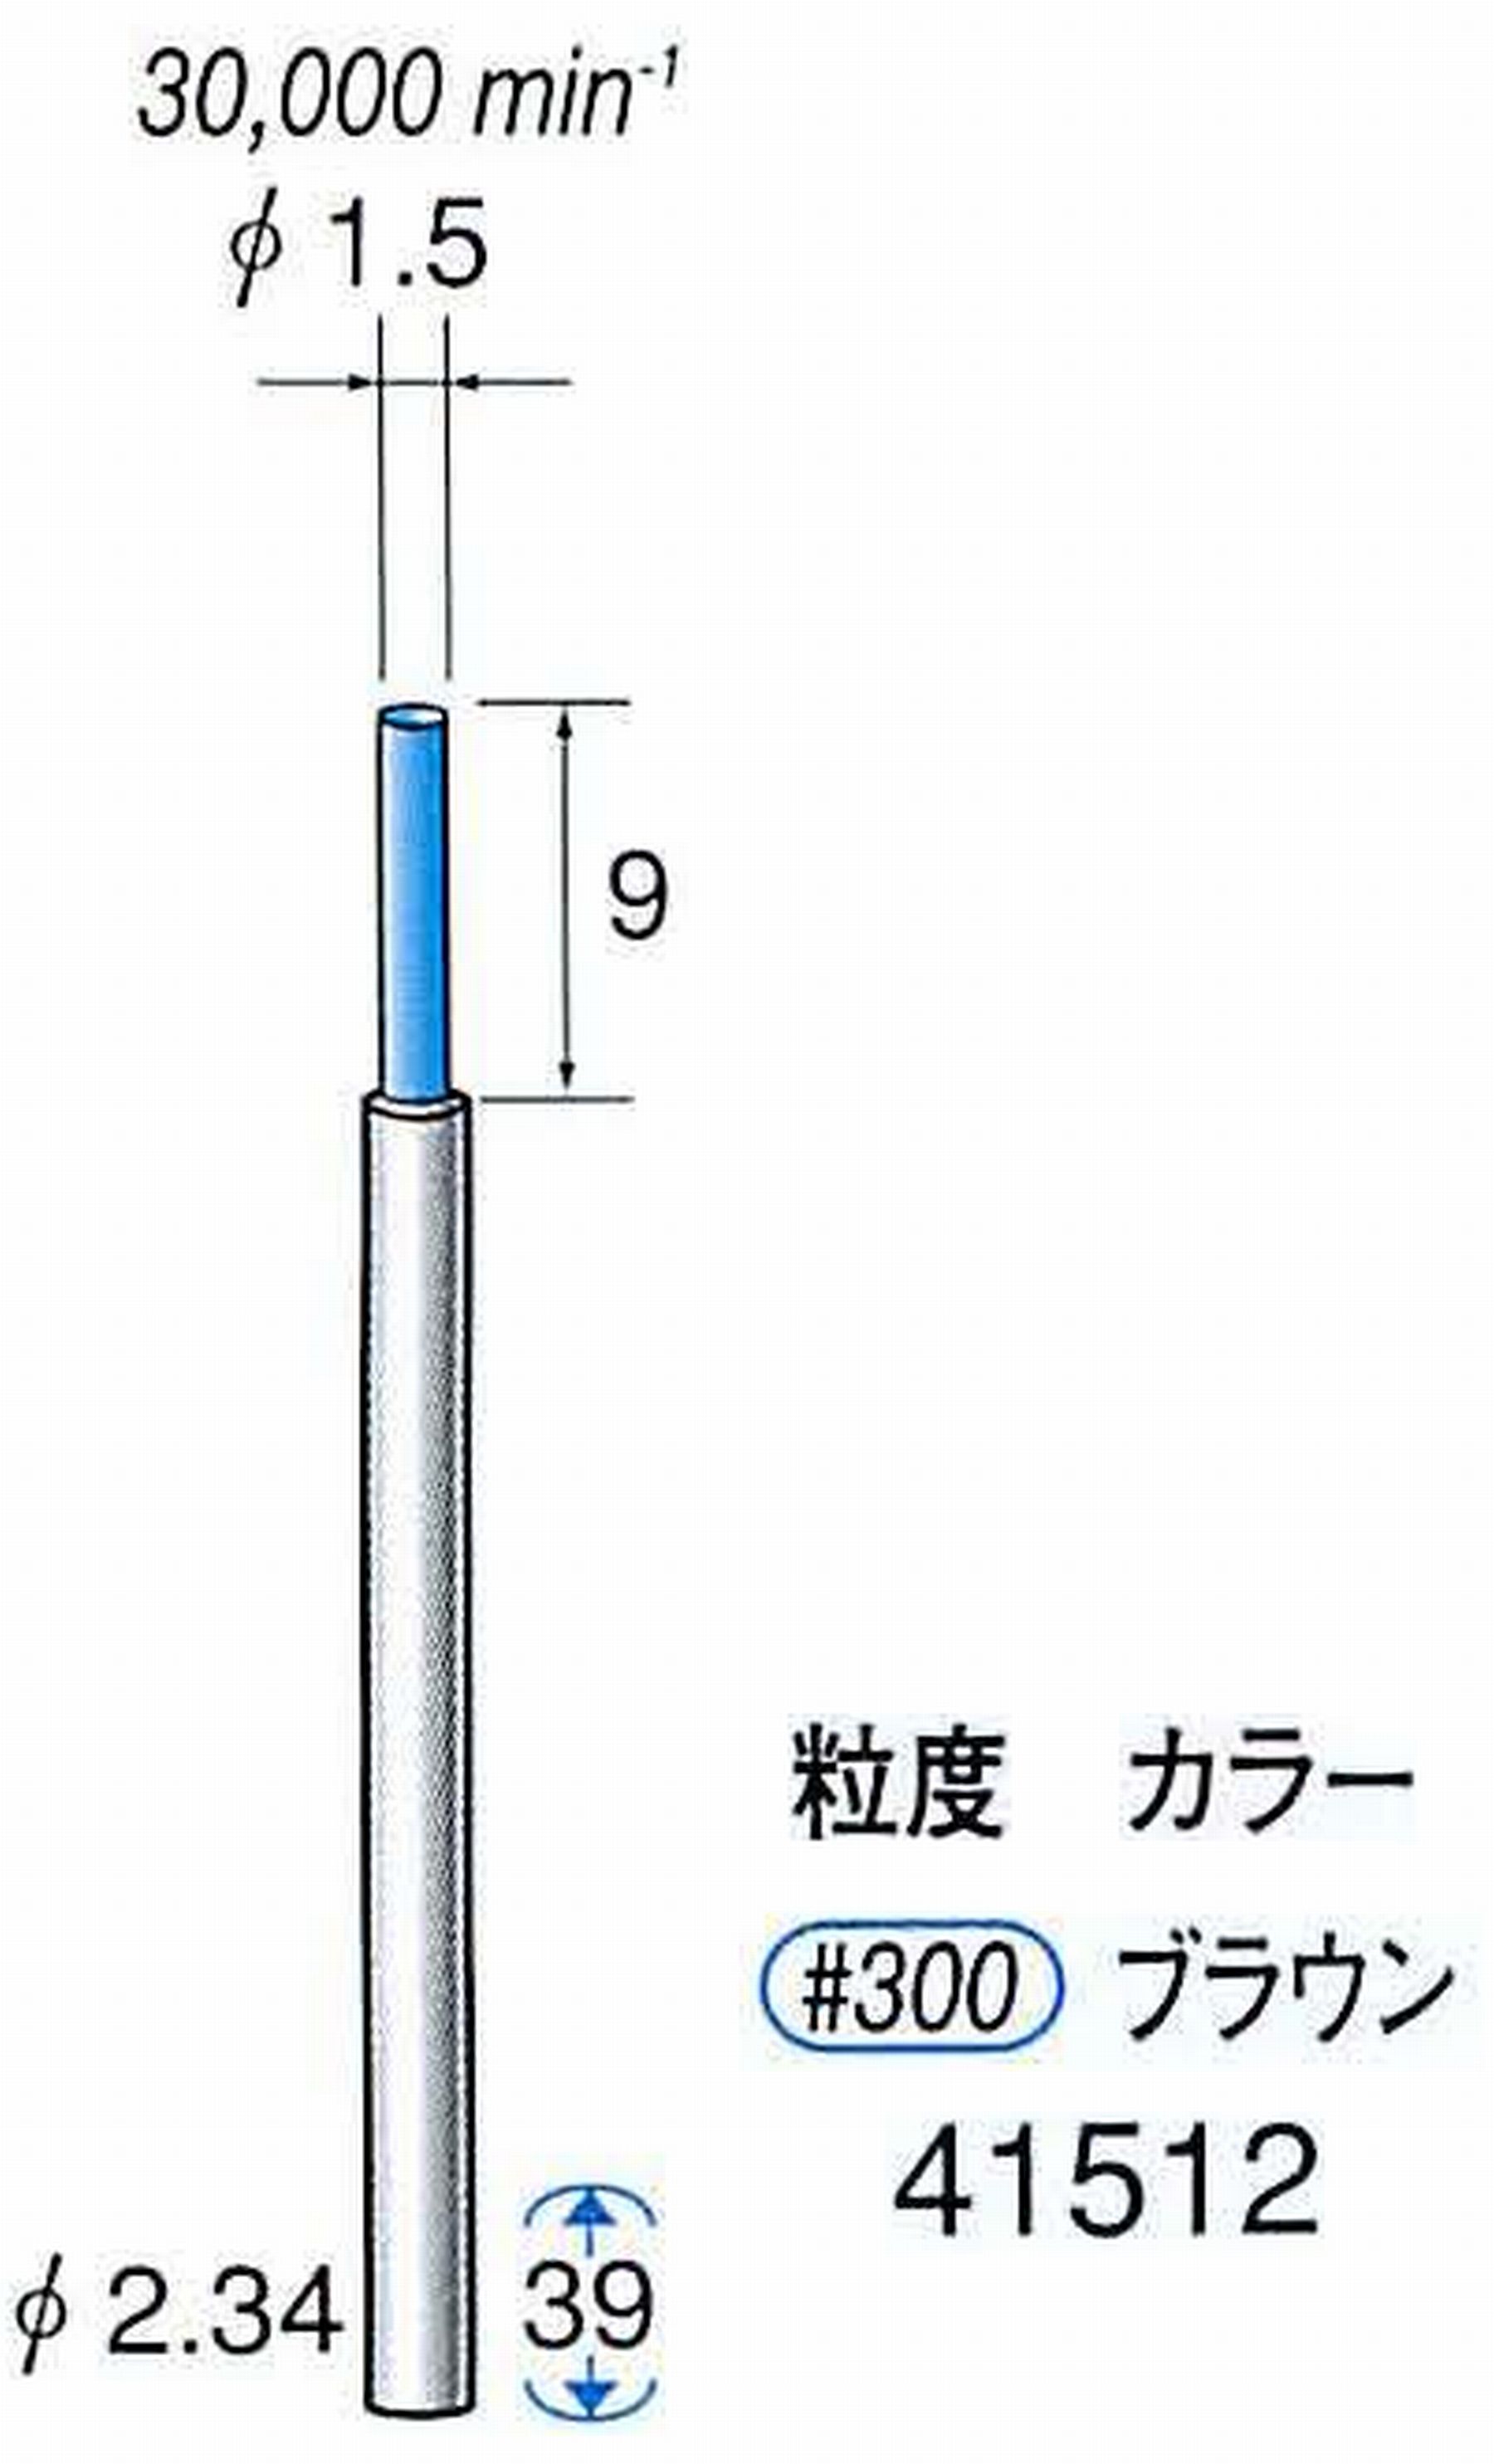 ナカニシ/NAKANISHI セラファイバー精密軸付砥石(カラー ブラウン) 軸径(シャンク) φ2.34mm 41512